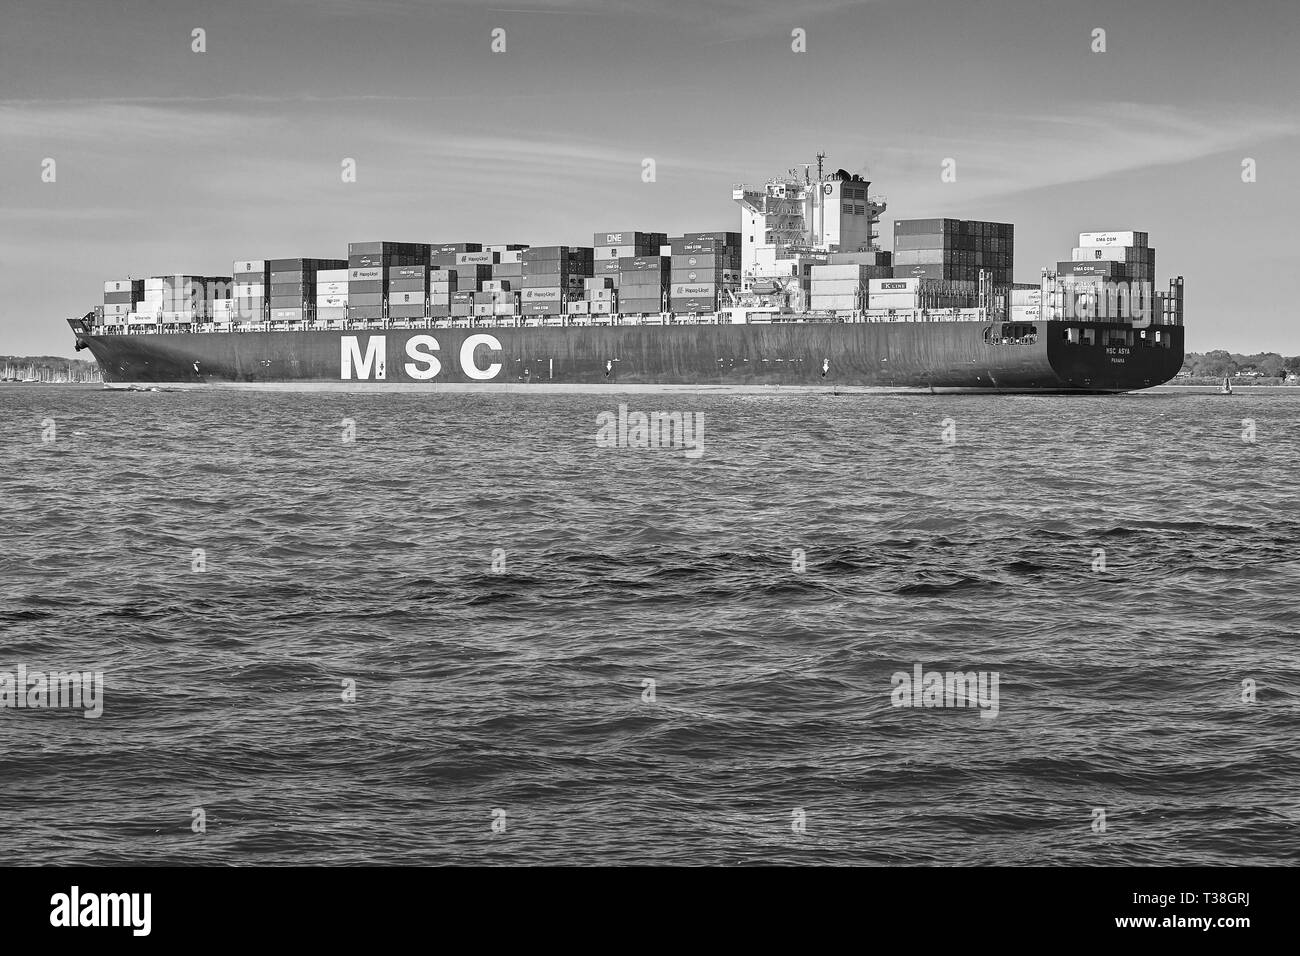 Foto in bianco e nero della nave portacontainer MSC ASYA mentre entra nel porto di Southampton, Regno Unito Foto Stock